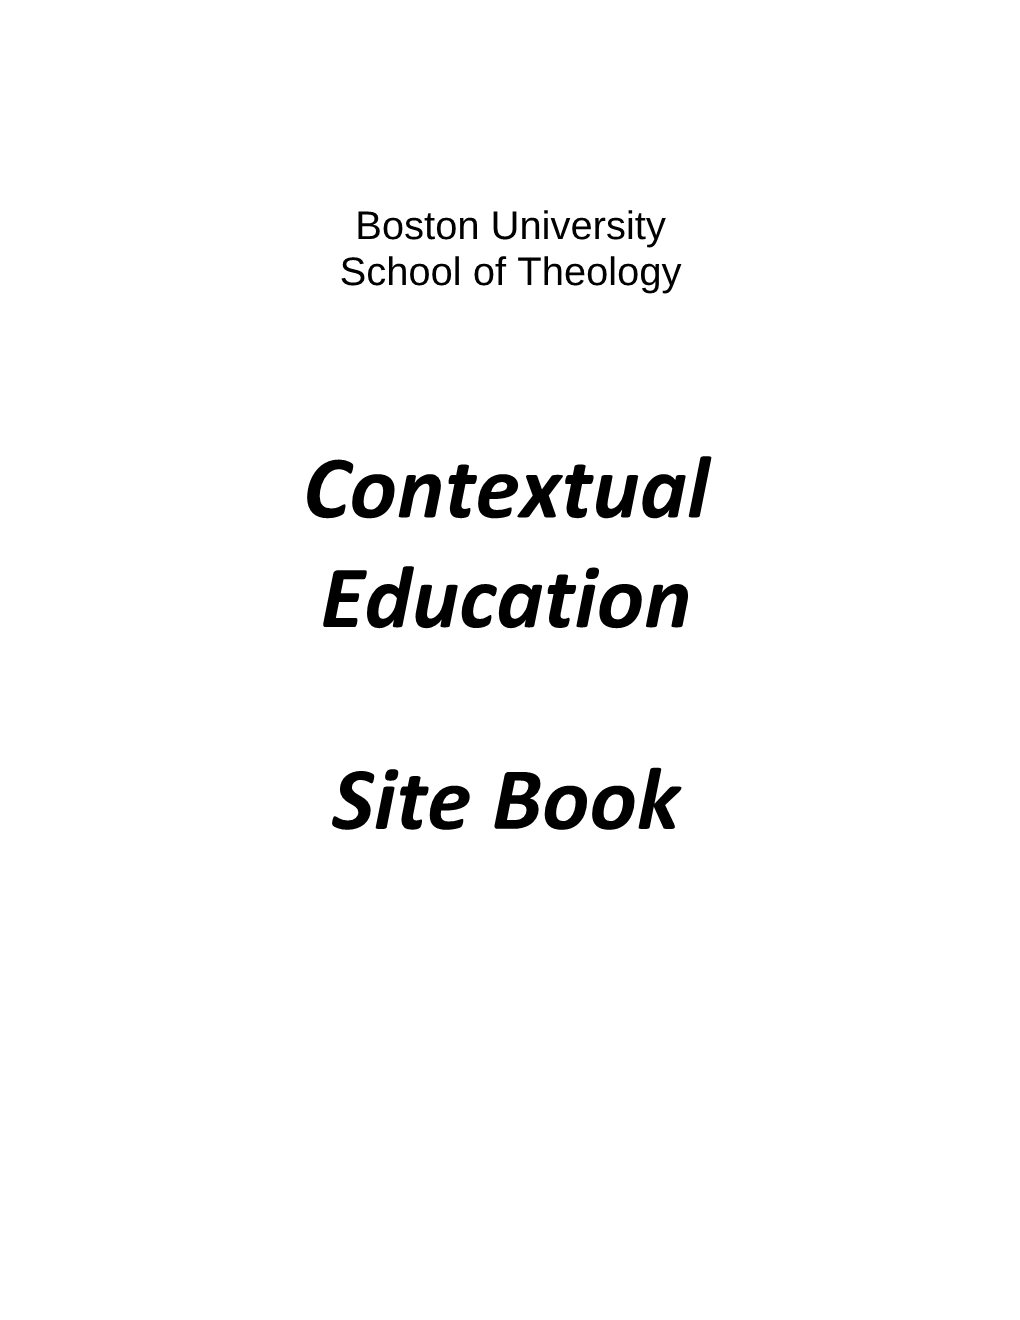 Contextual Education